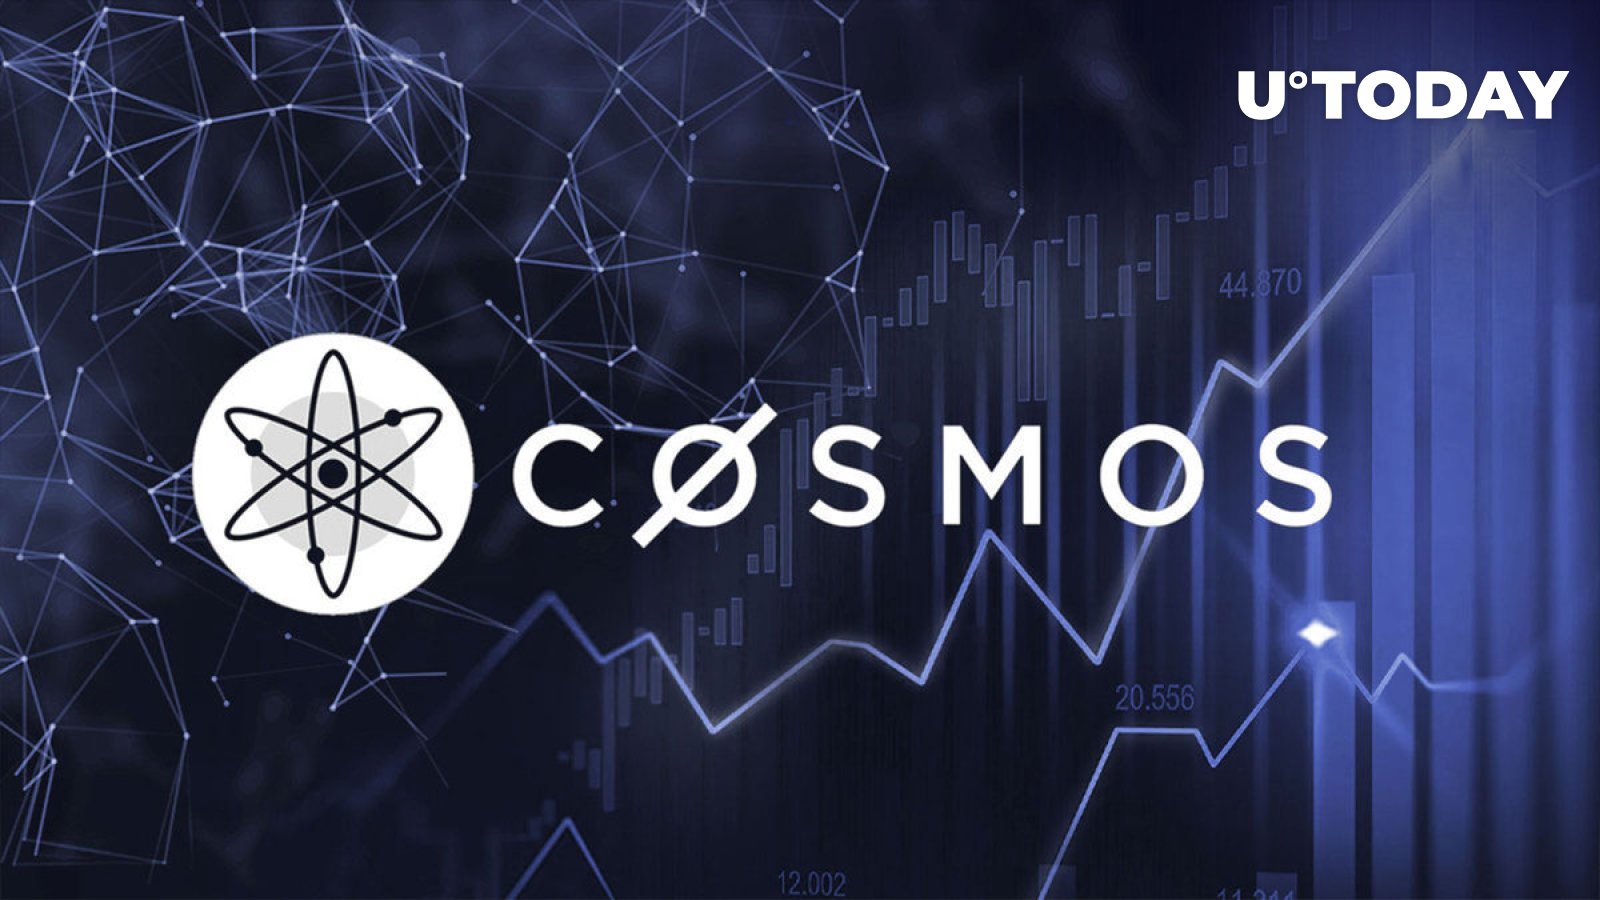 Cosmos creative logo | Behance :: Behance